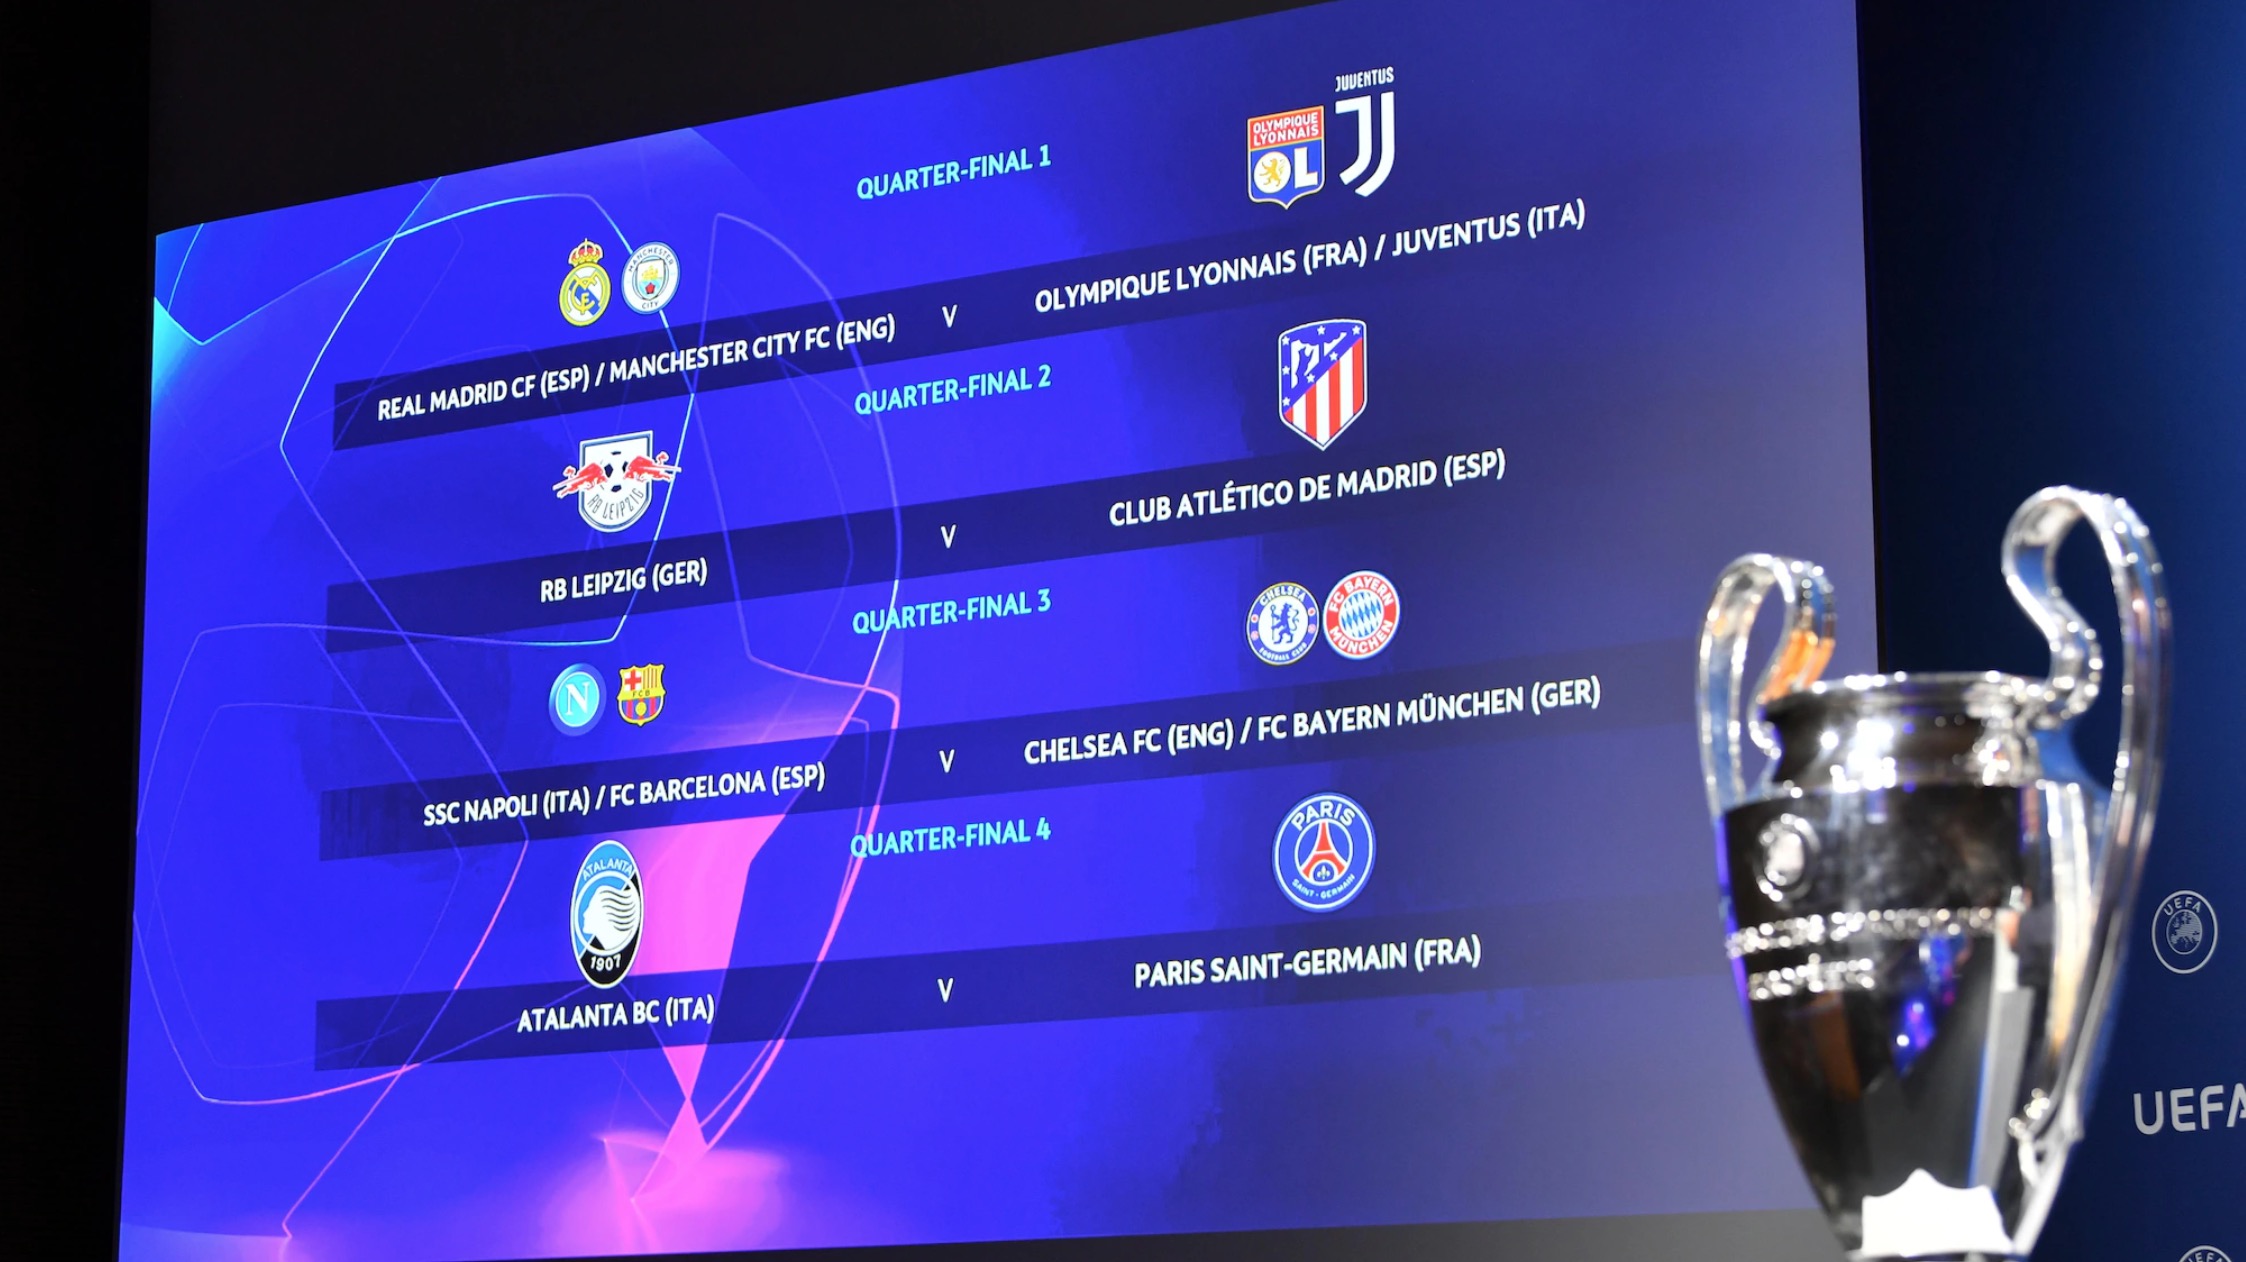 Începe Champions League, cele mai bune echipe se lupta pentru Liga Campionilor UEFA. Program meciuri